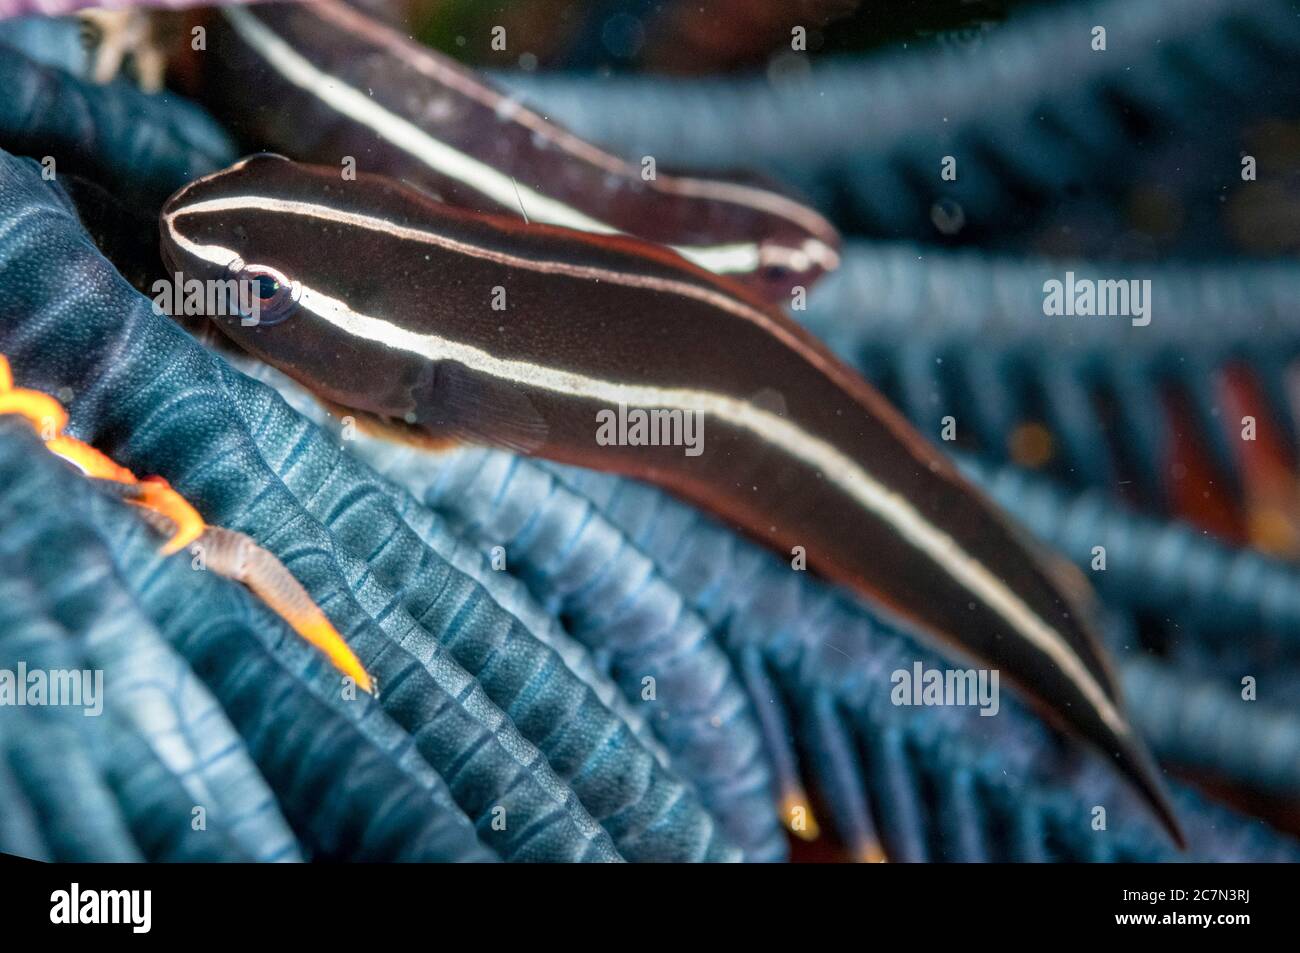 Crinoid Clingfish, Discotrema crinophila, pair in Crinoid, Comatulida Order, Mutiara dive site, Manado, Sulawesi, Indonesia, Pacific Ocean Stock Photo